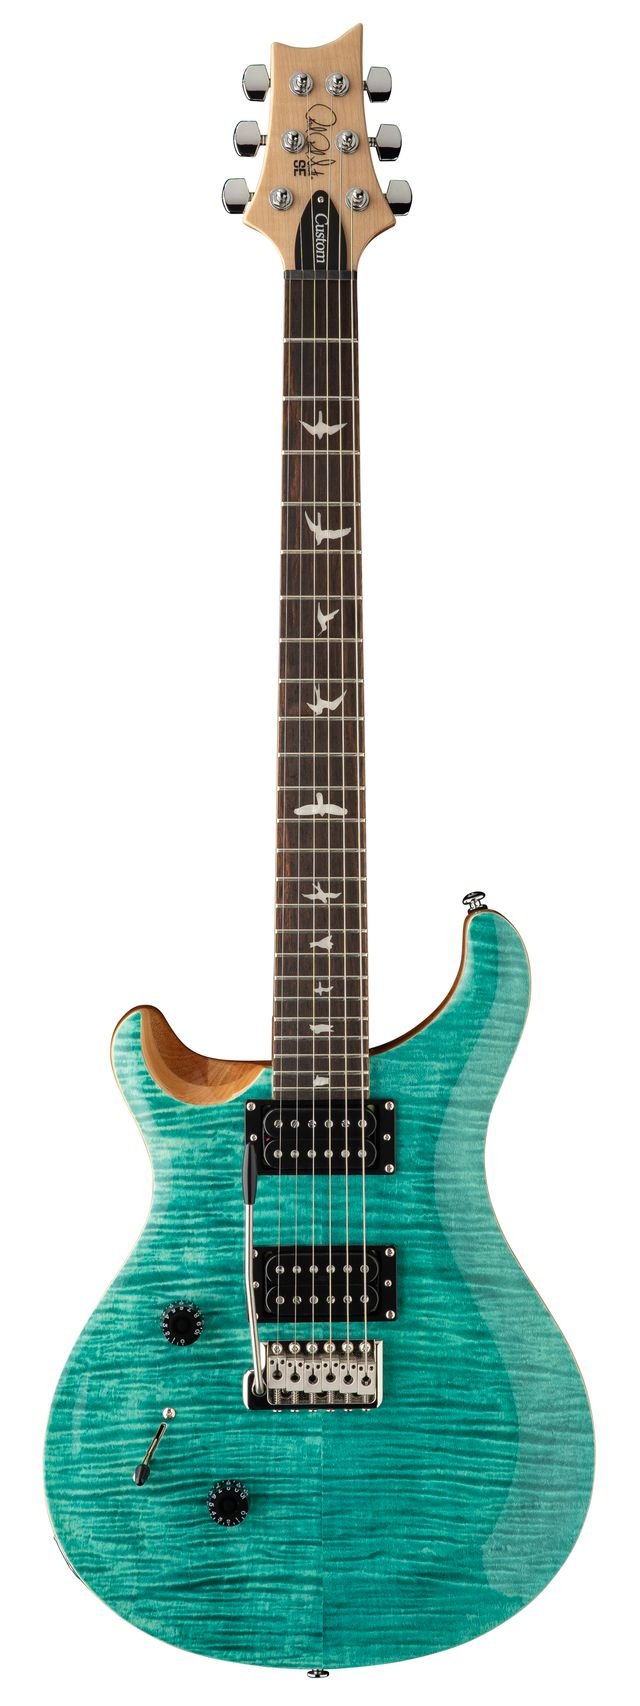  SE Custom 24 Lefthand   Turquoise 